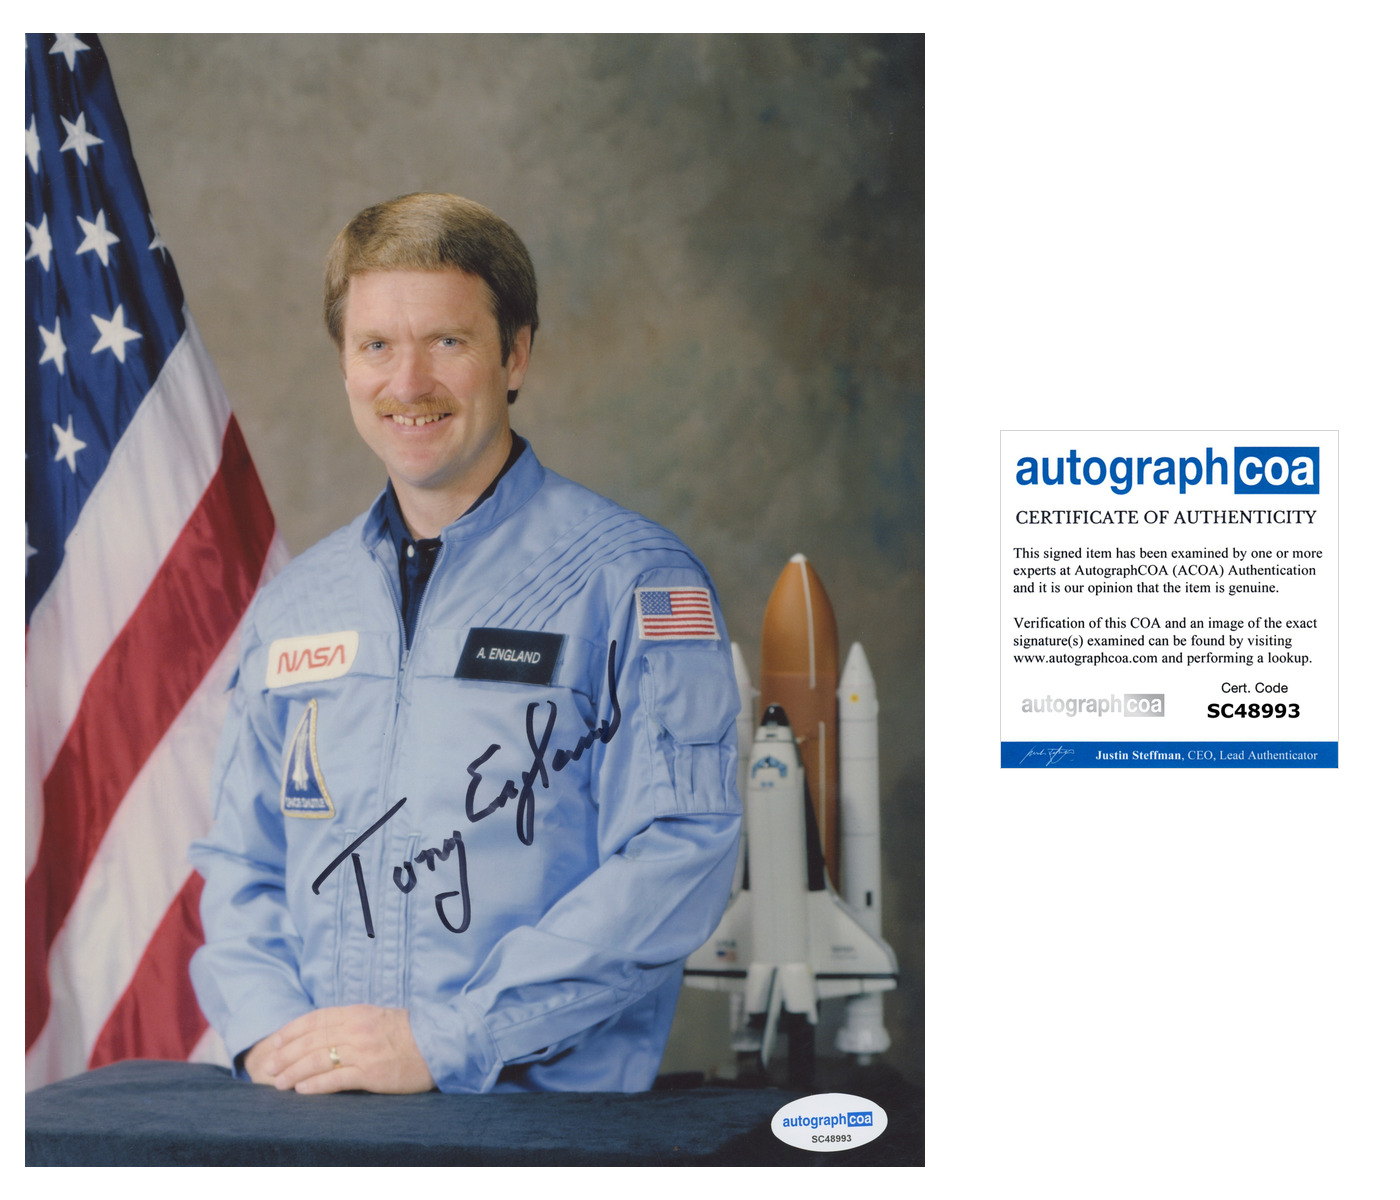 ANTHONY TONY ENGLAND SIGNED 8X10 PHOTO NASA ASTRONAUT SPACE AUTOGRAPH ACOA